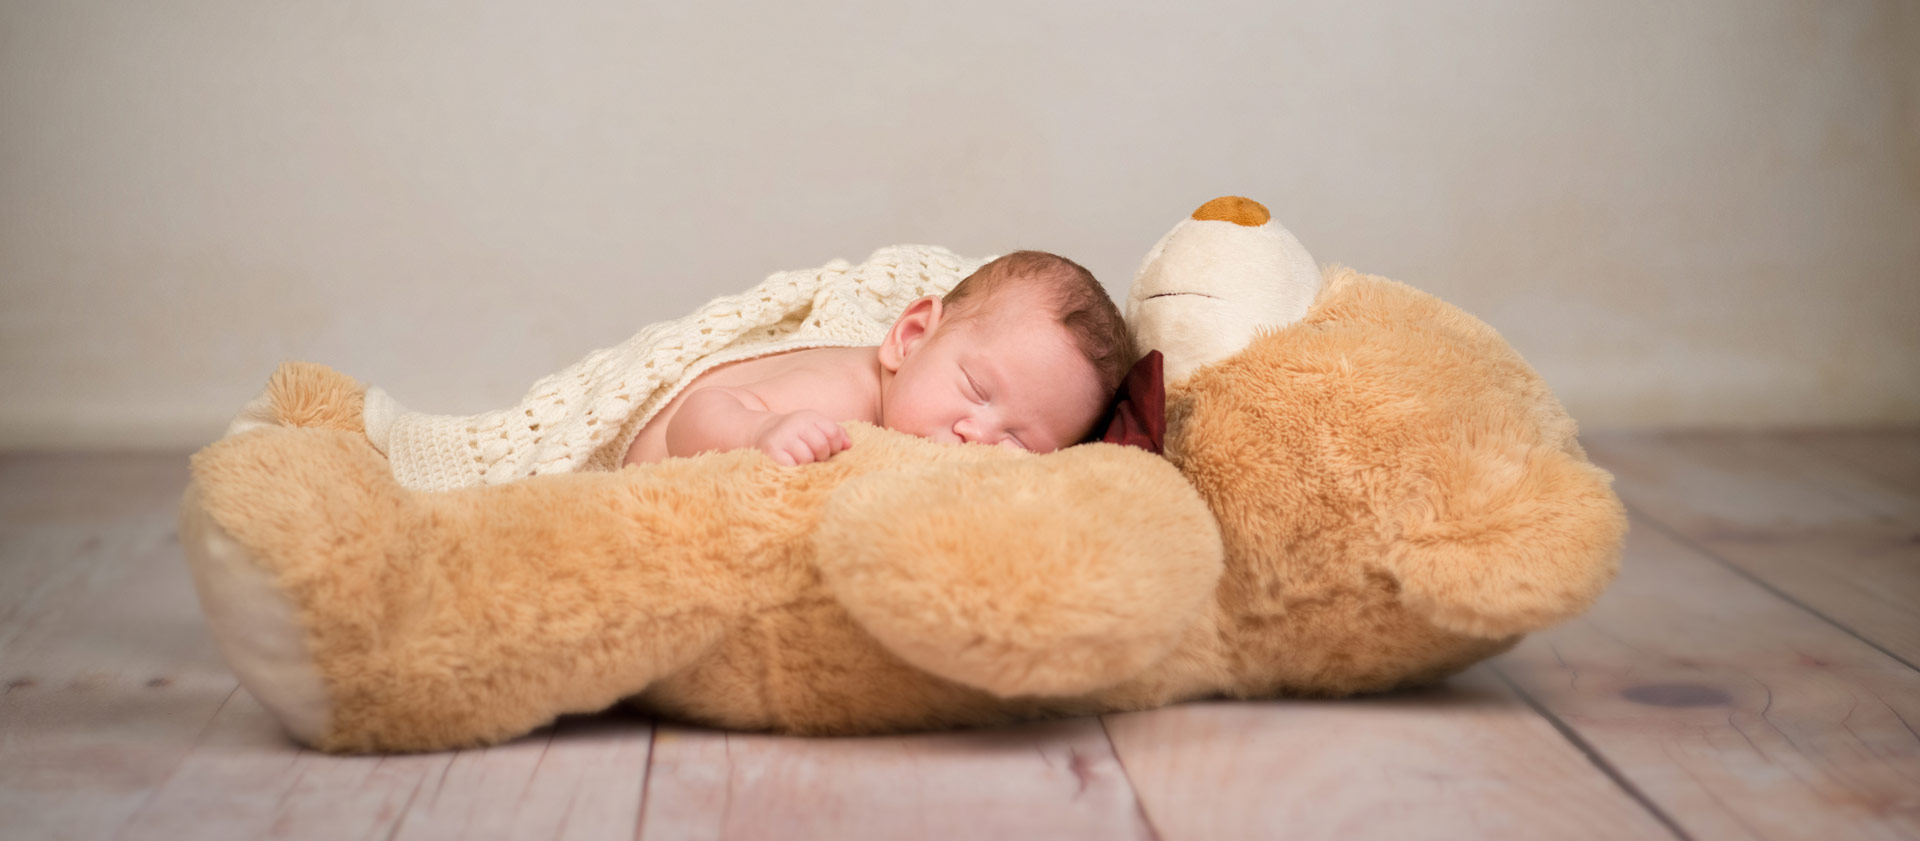 Neugeborenes Baby schläft auf seinem großen Teddy